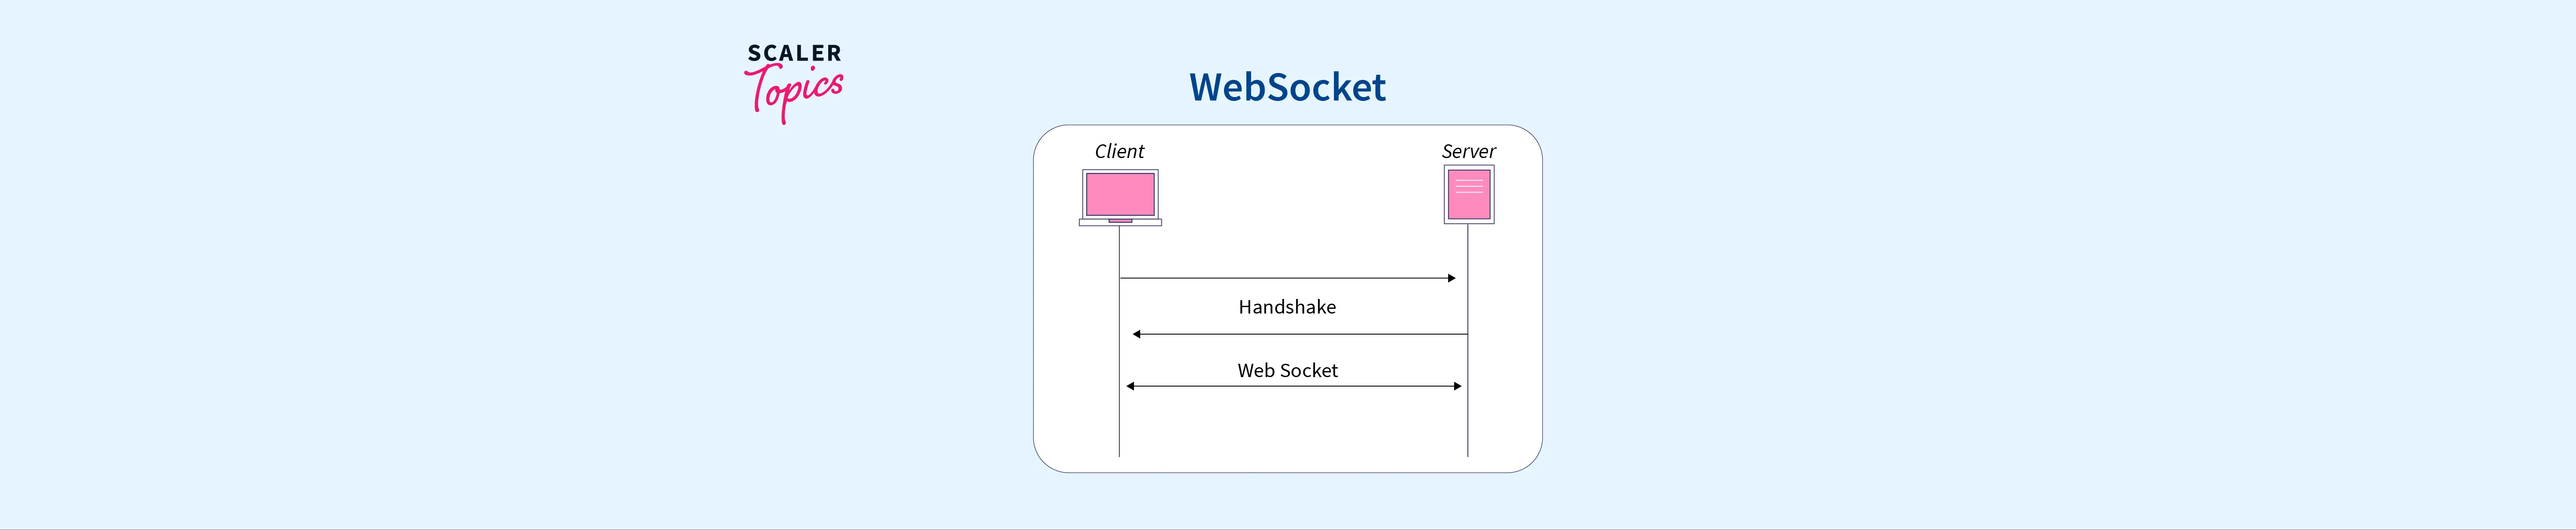 Websocket FeatureImage.webp